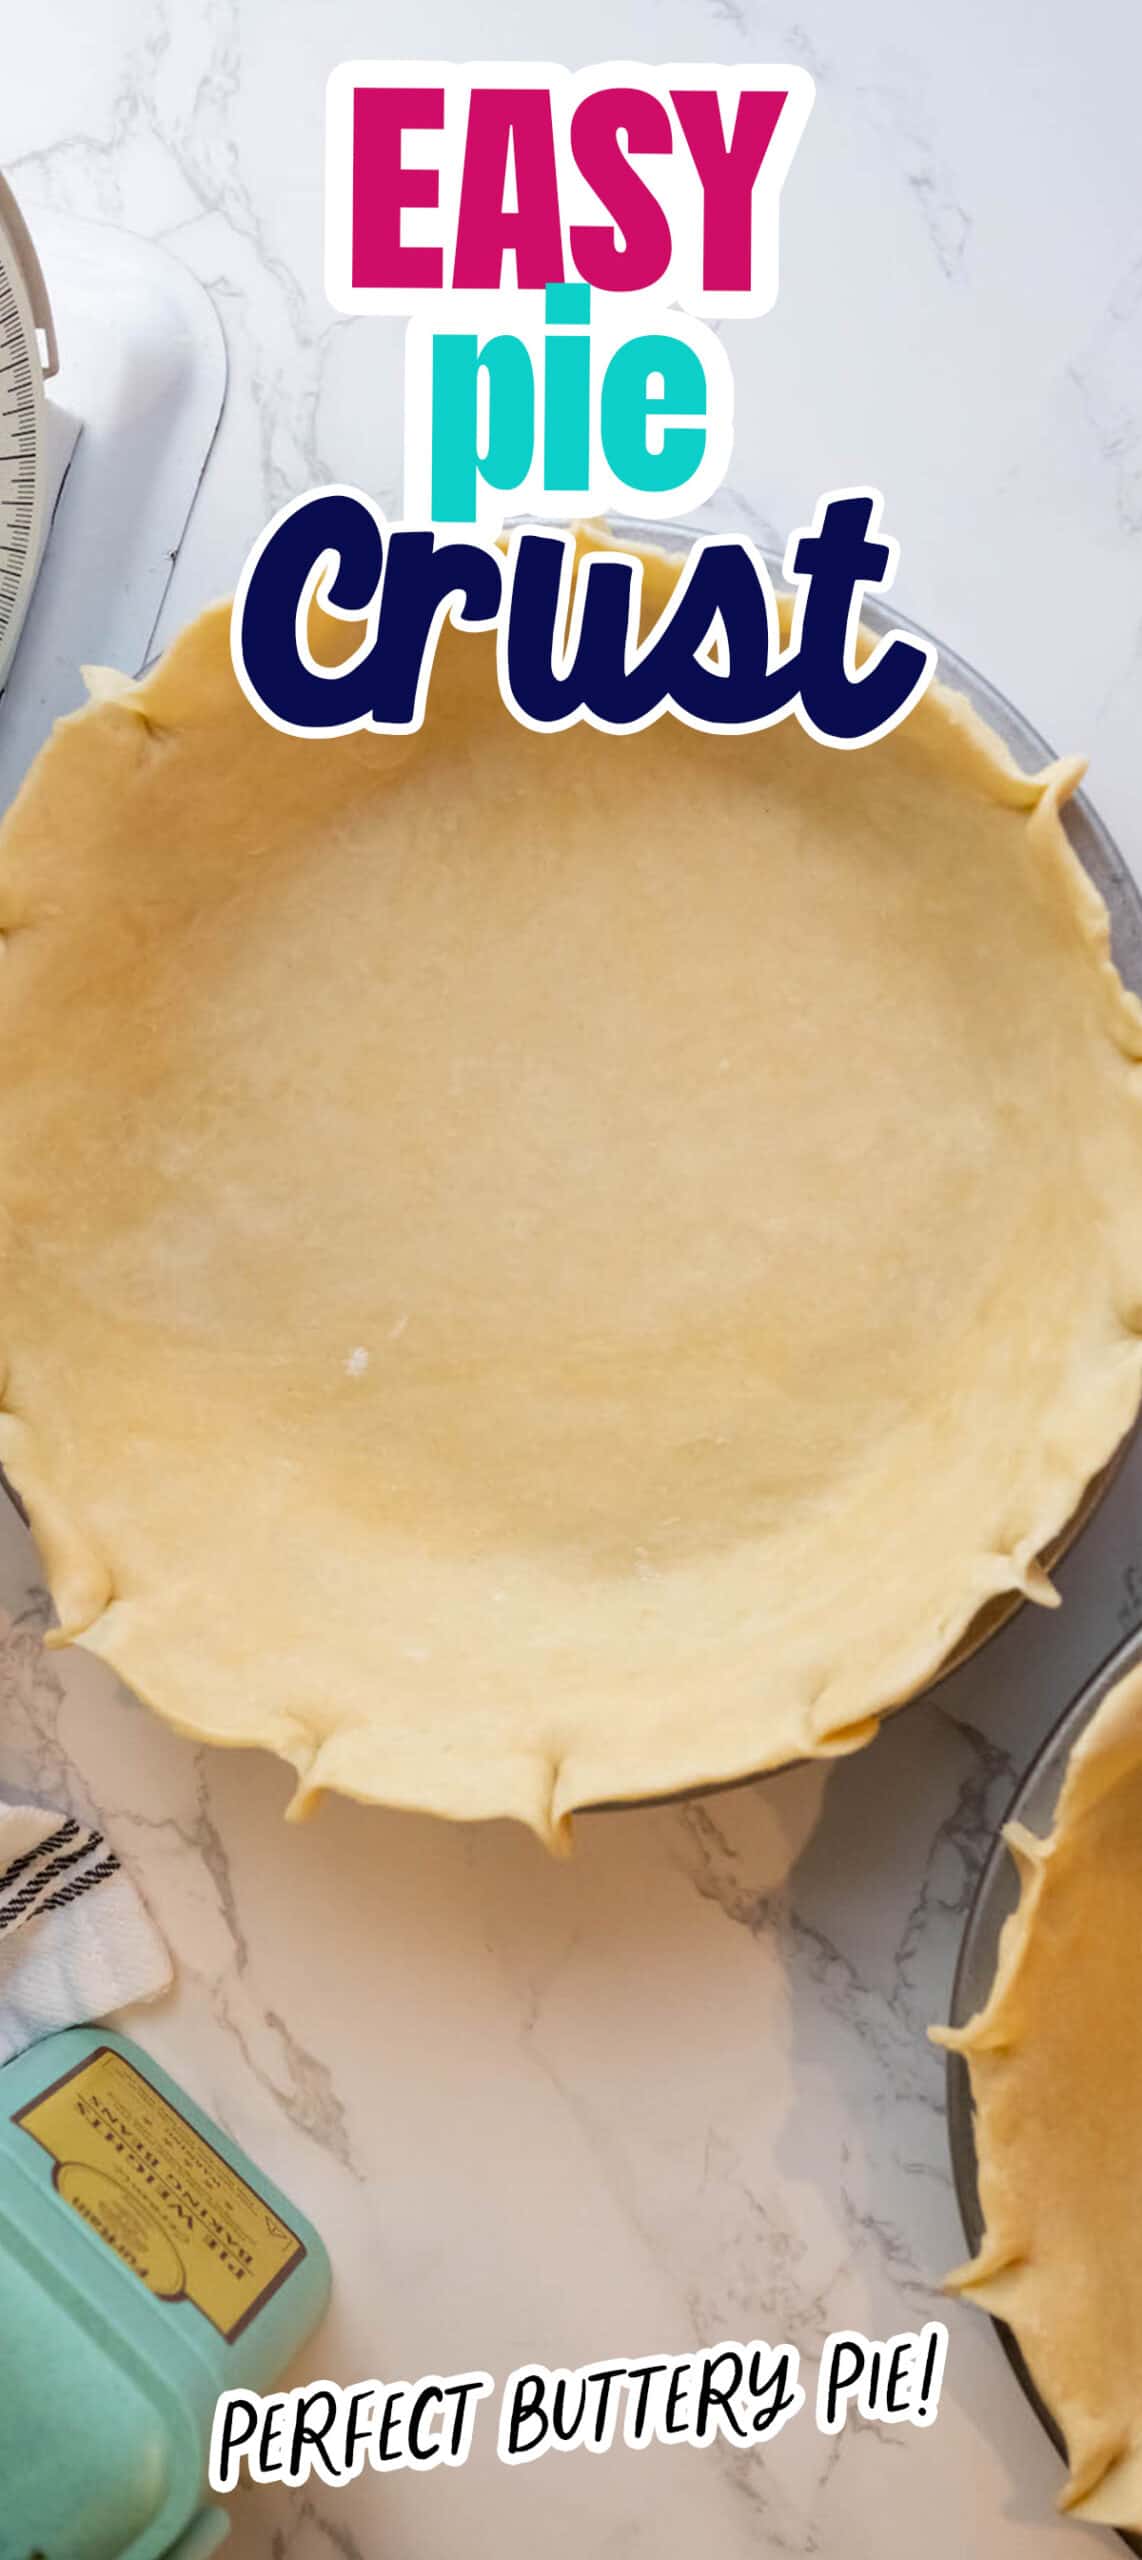 Easy pie crust.